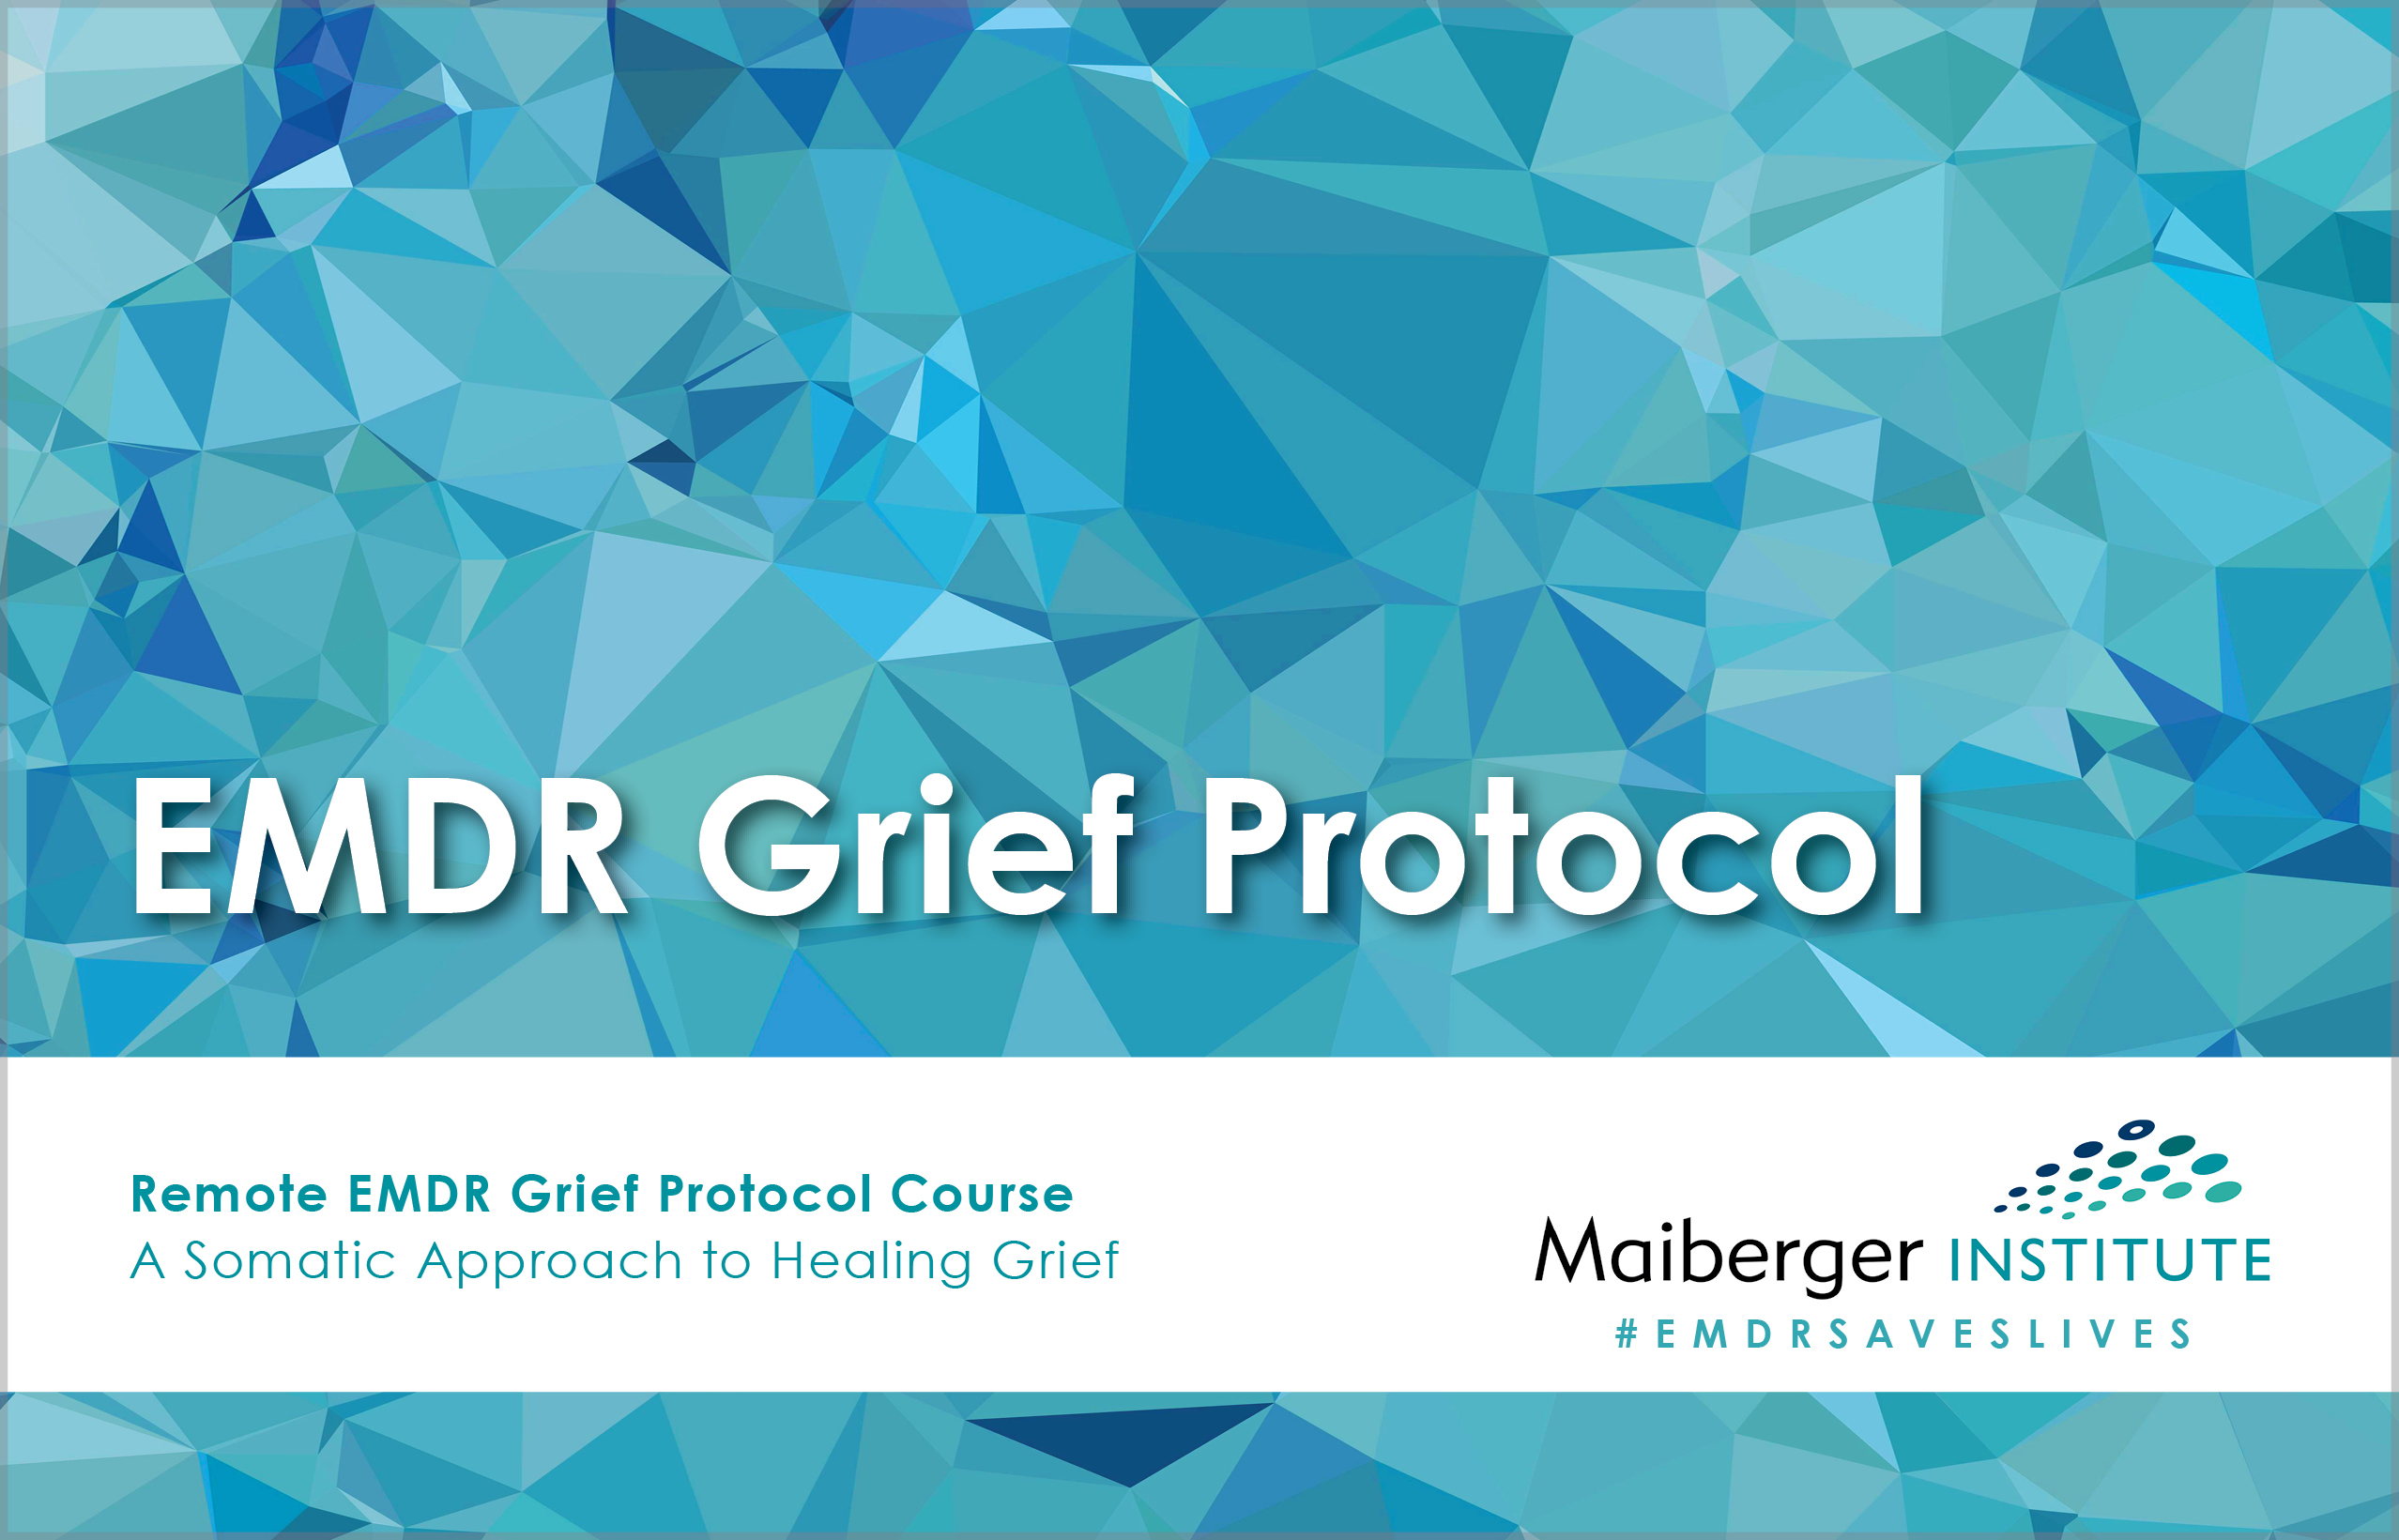 Remote EMDR Grief Protocol Course - EMDR Events Calendar - Maiberger Institute